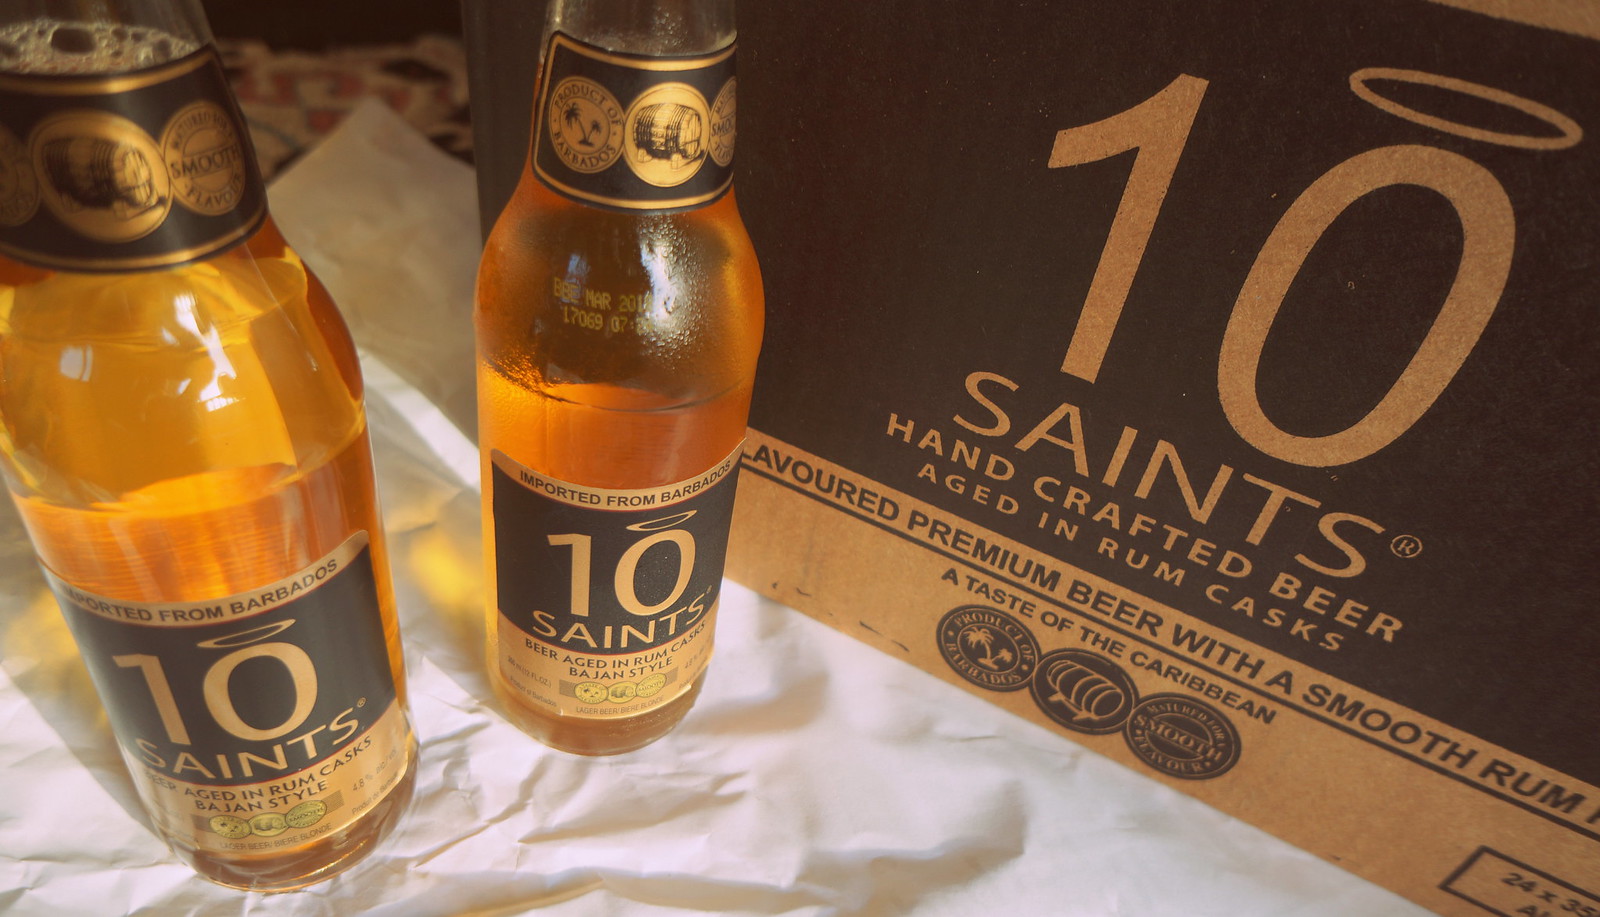 10 Saints Barbados Beer